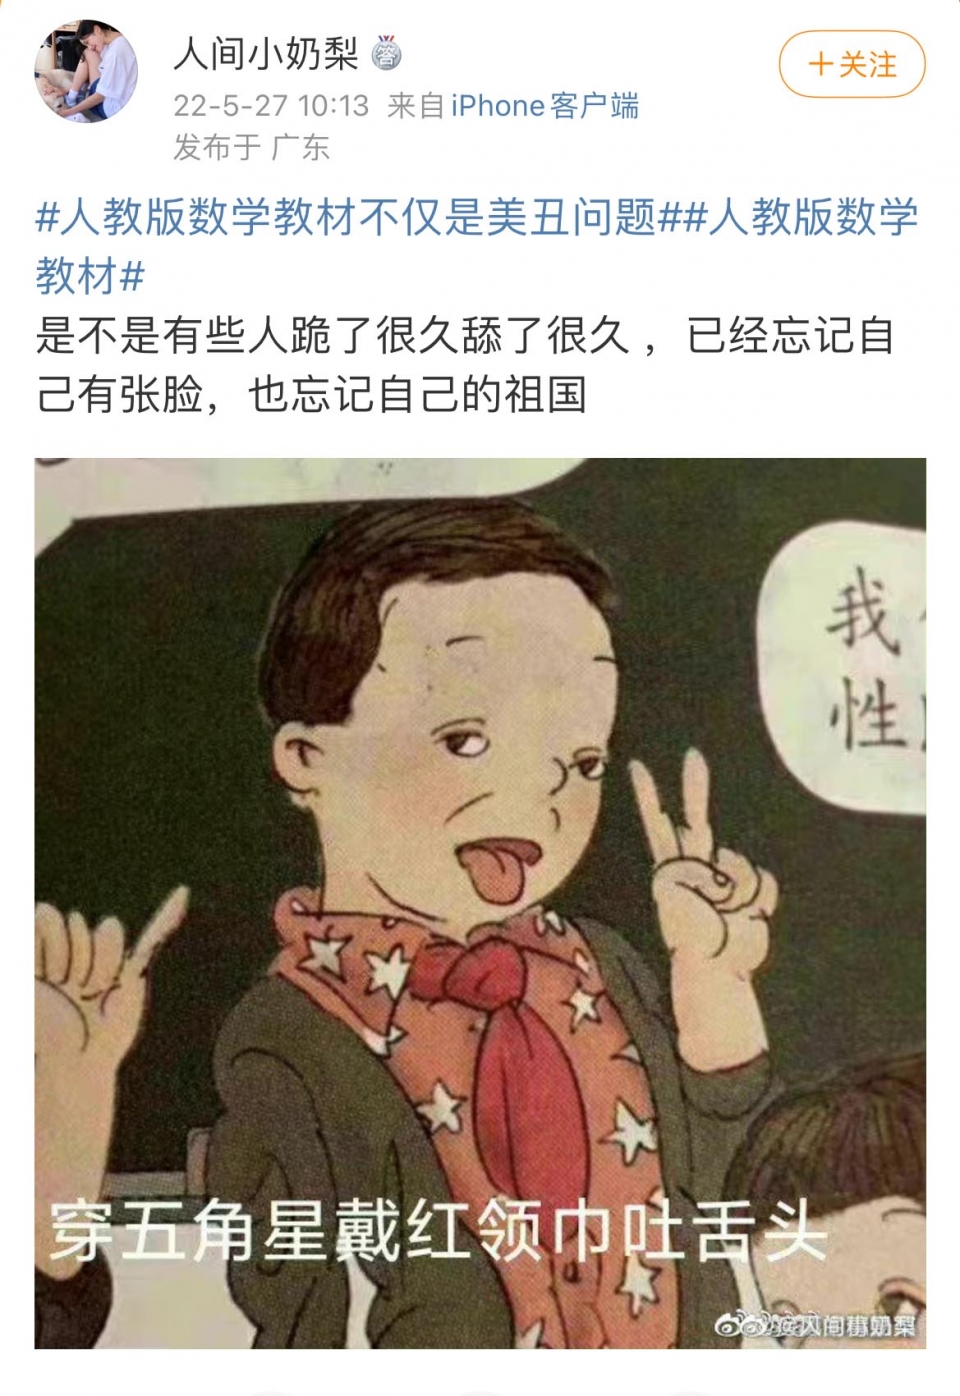 삽화 캐릭터의 옷에 별과 줄무늬가 있는 것에 대해 중국 내부에선 친(親) 미국적이란 비판이 제기됐다. 이로 인해 중국 최대 교과서 출판사인 인민교육출판은 공개 사과를 하기에 이르렀다. [사진=블룸버그]